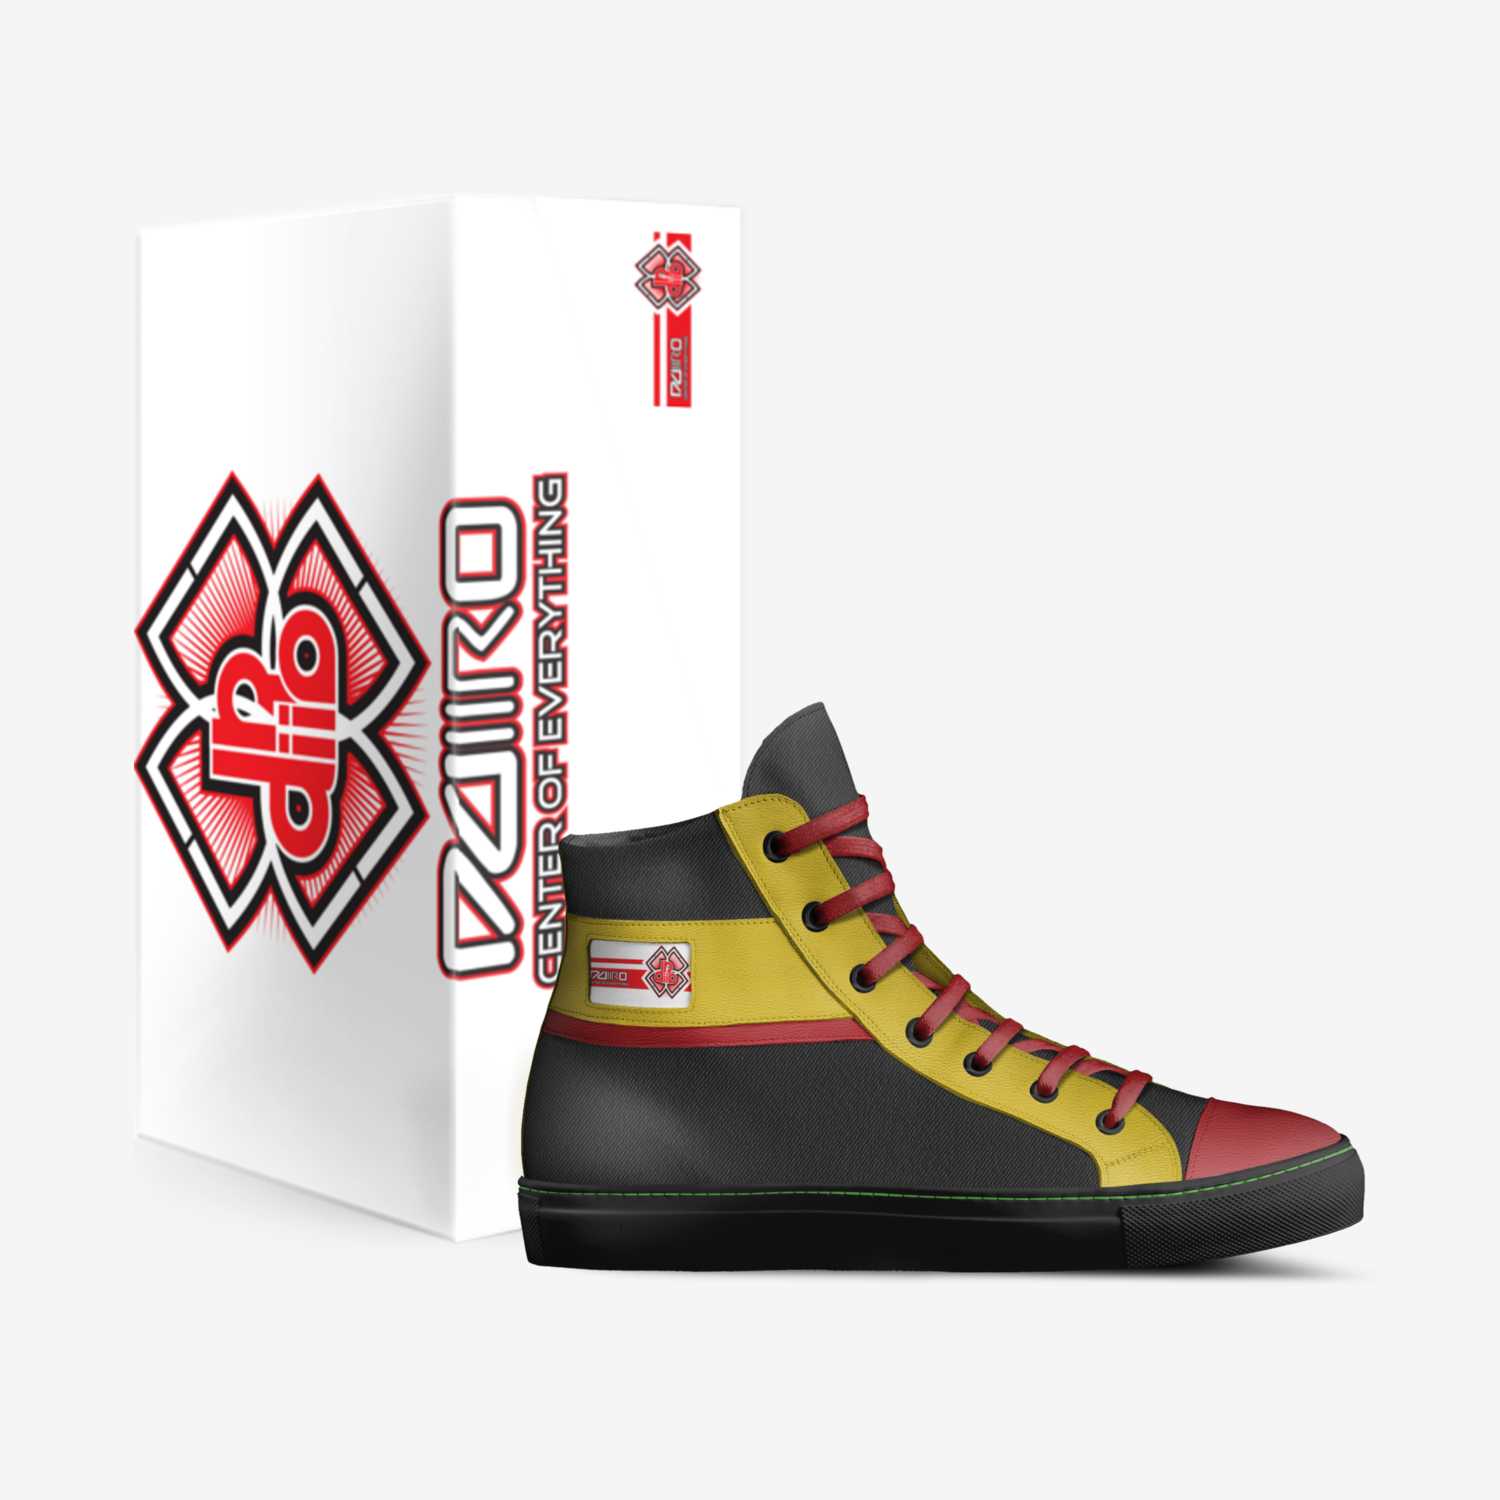 DDIIRO WAKATI MU KINTU custom made in Italy shoes by Ddiiro Wakati Mu Kintu | Box view